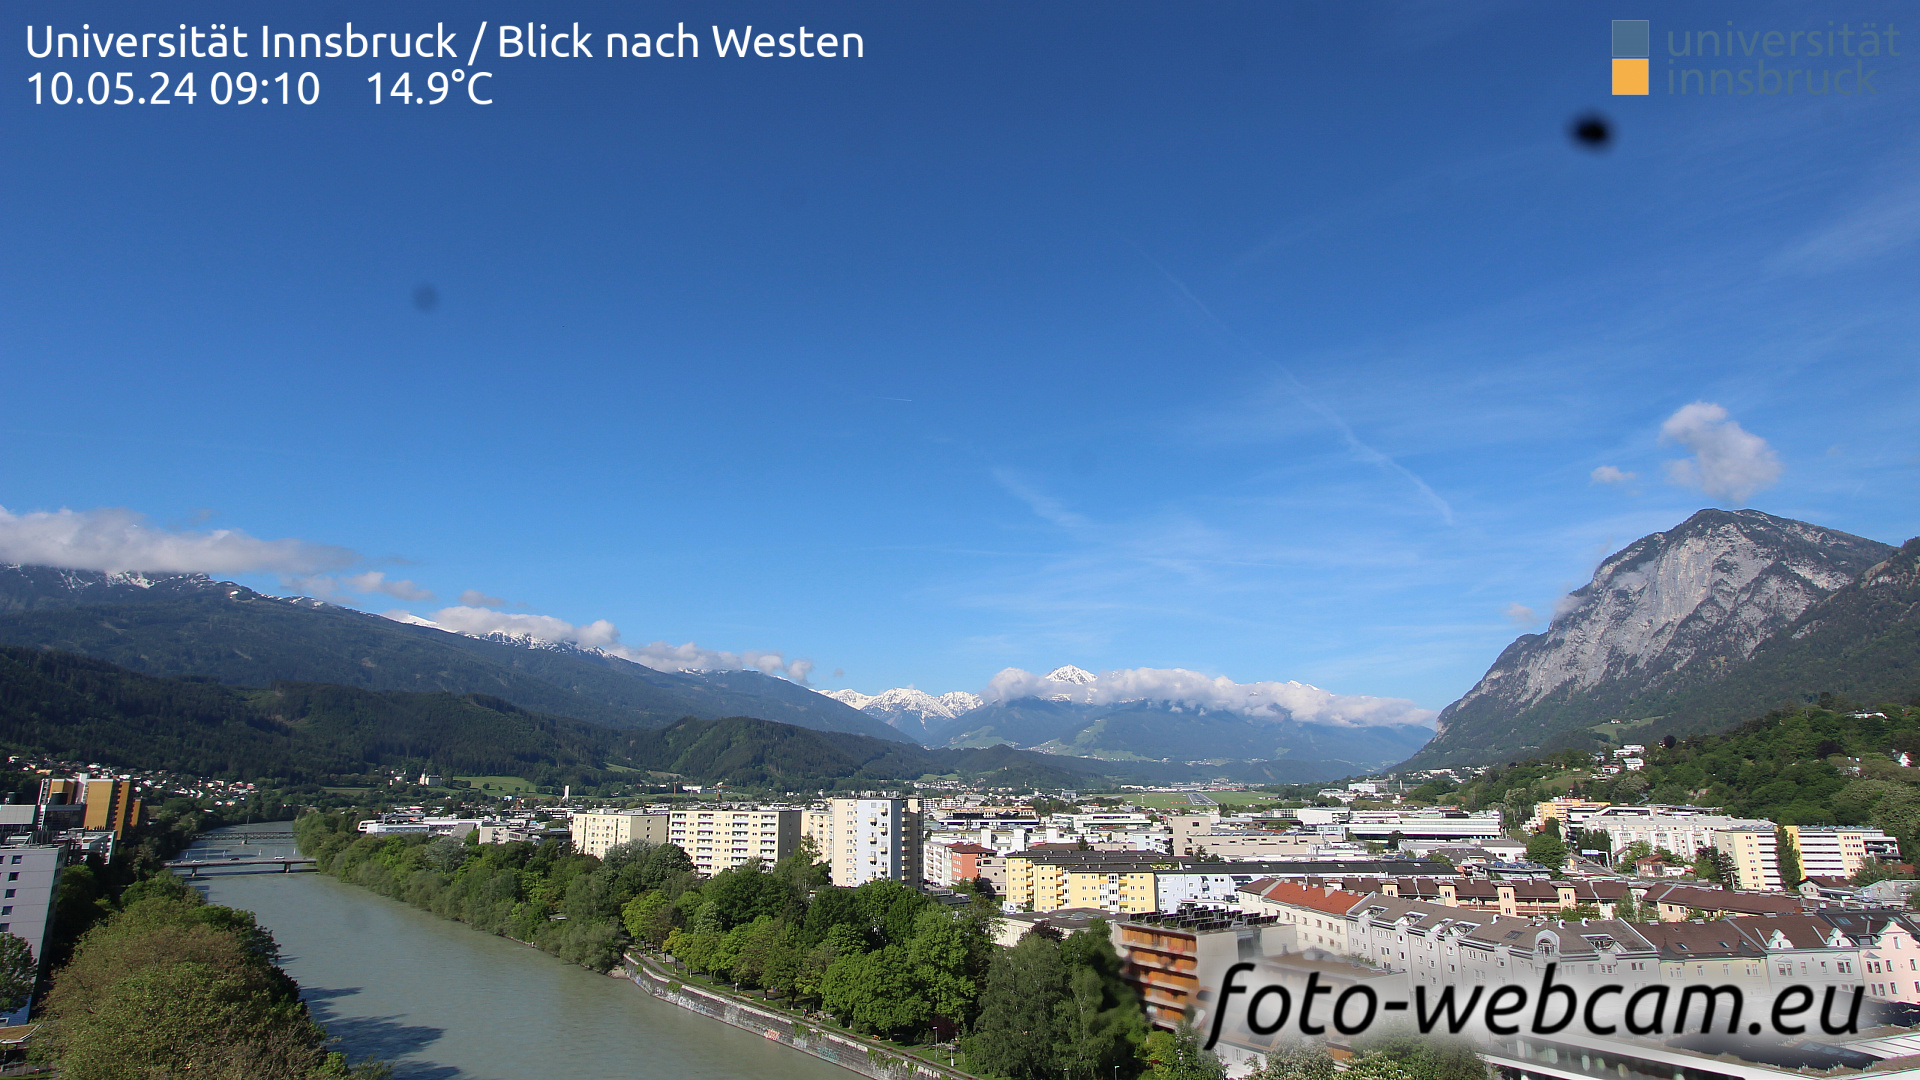 Innsbruck Thu. 09:17